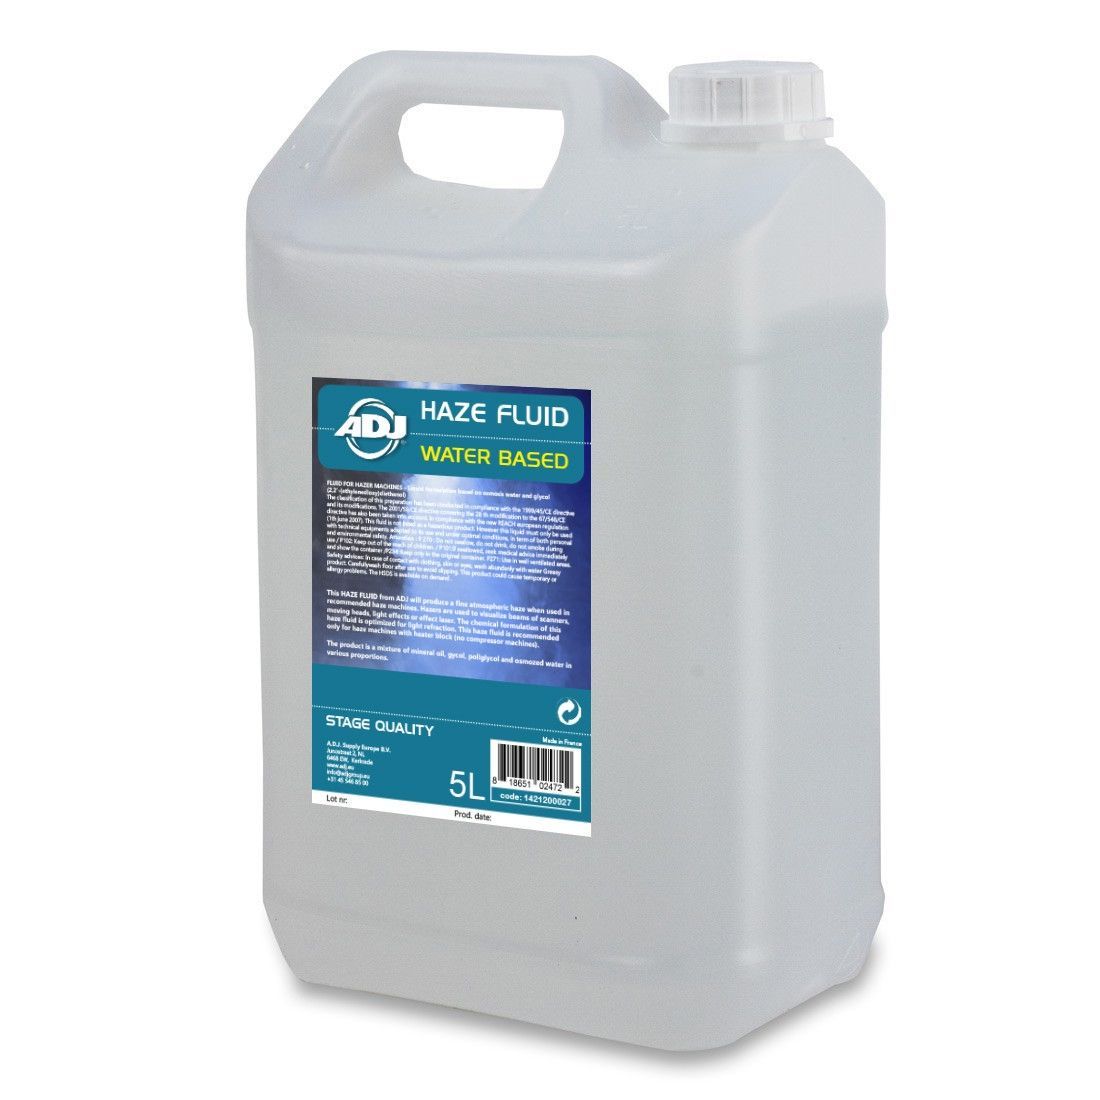 ADJ Haze Fluid water based 5l wasserbasierend 